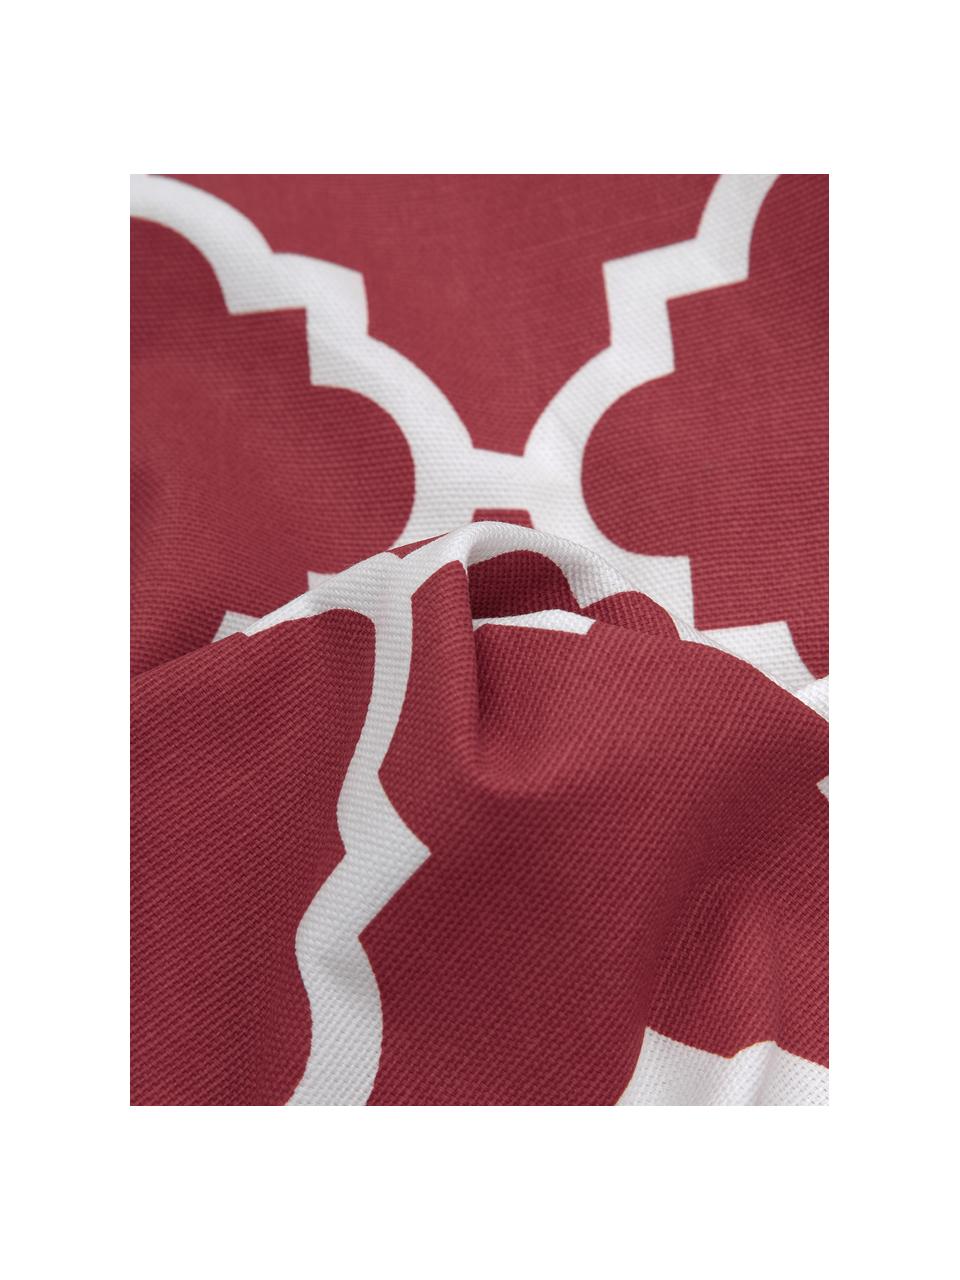 Poszewka na poduszkę Lana, 100% bawełna, Ciemny czerwony, biały, S 45 x D 45 cm